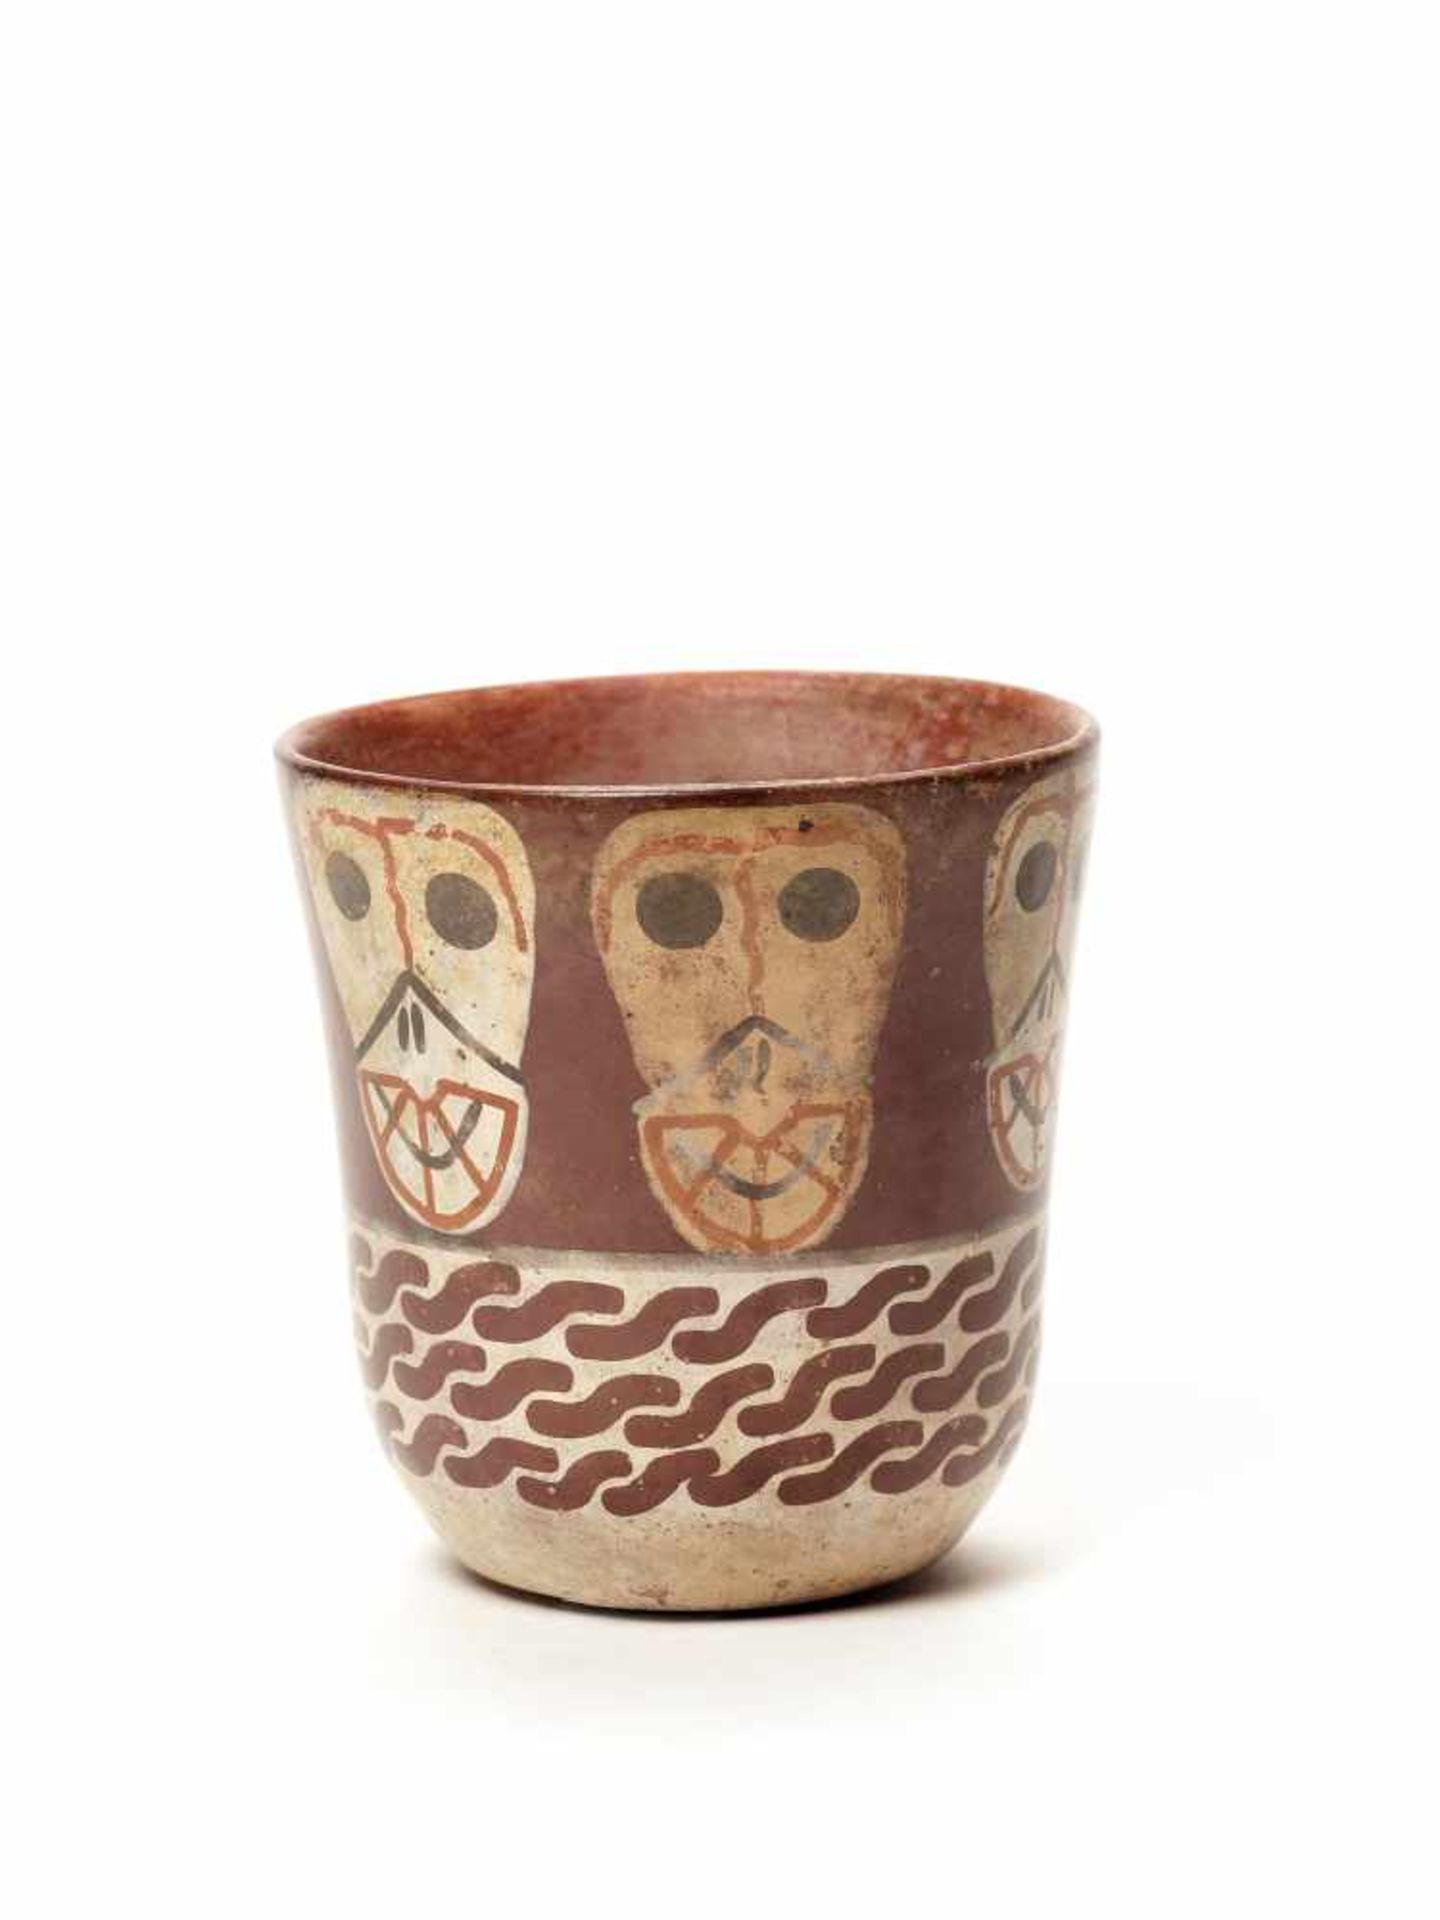 THREE CUPS AND A VESSEL- HUARI/ WARI CULTURE STYLE Painted clayHuari/ Wari culture style, Peru, - Image 3 of 13